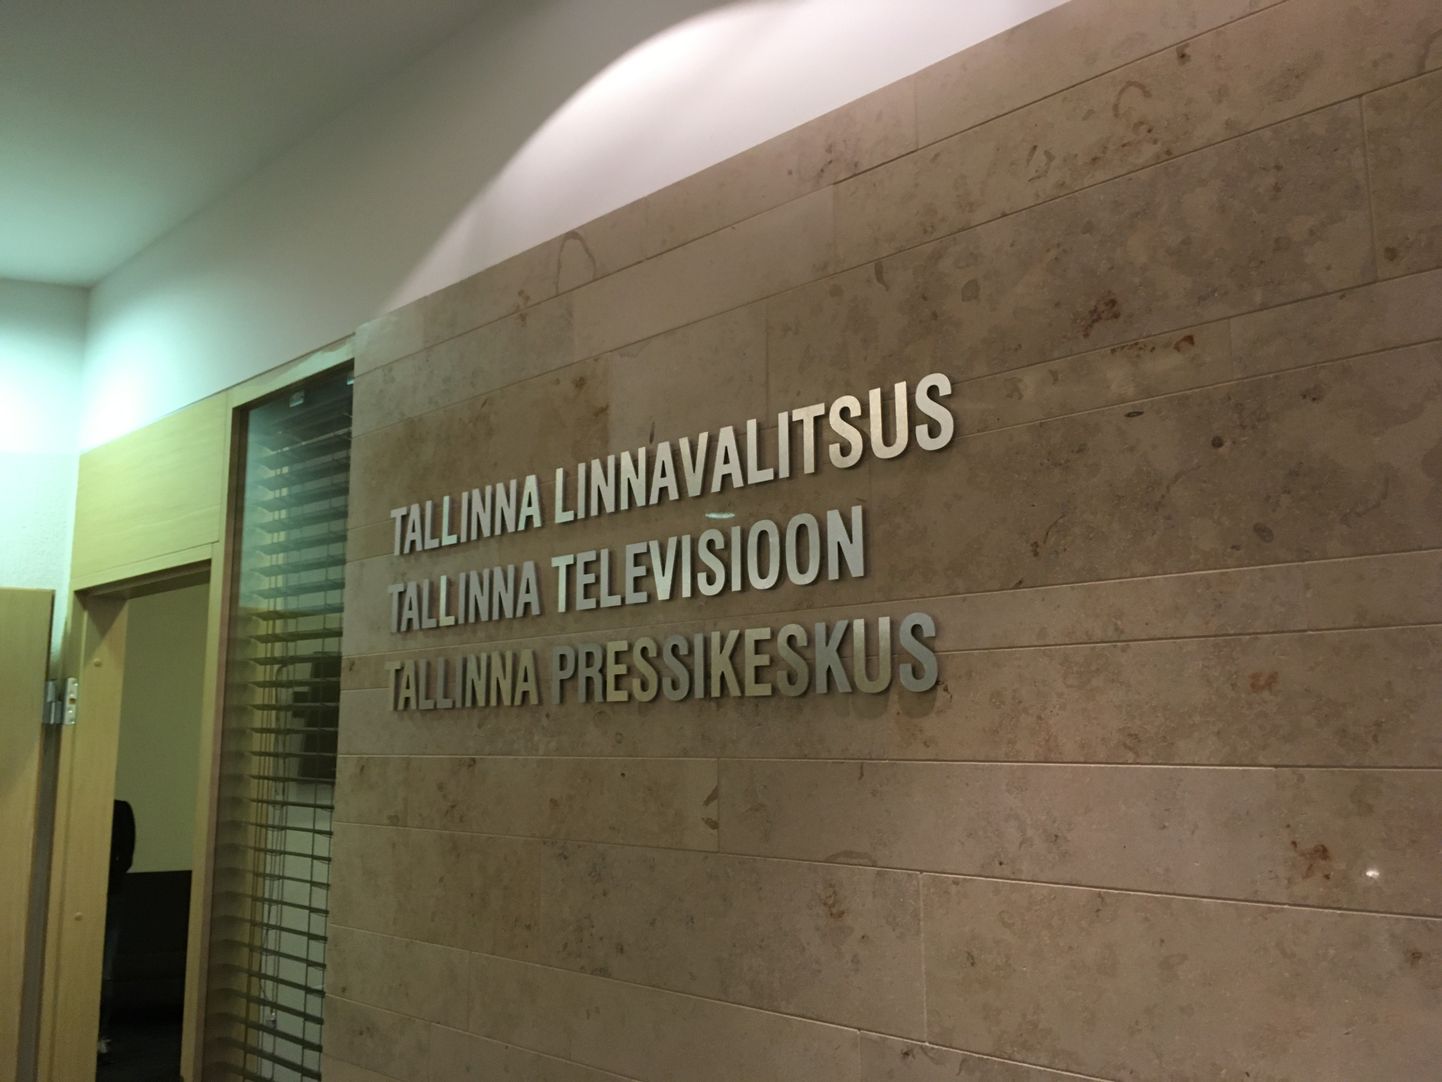 Tallinna TV.